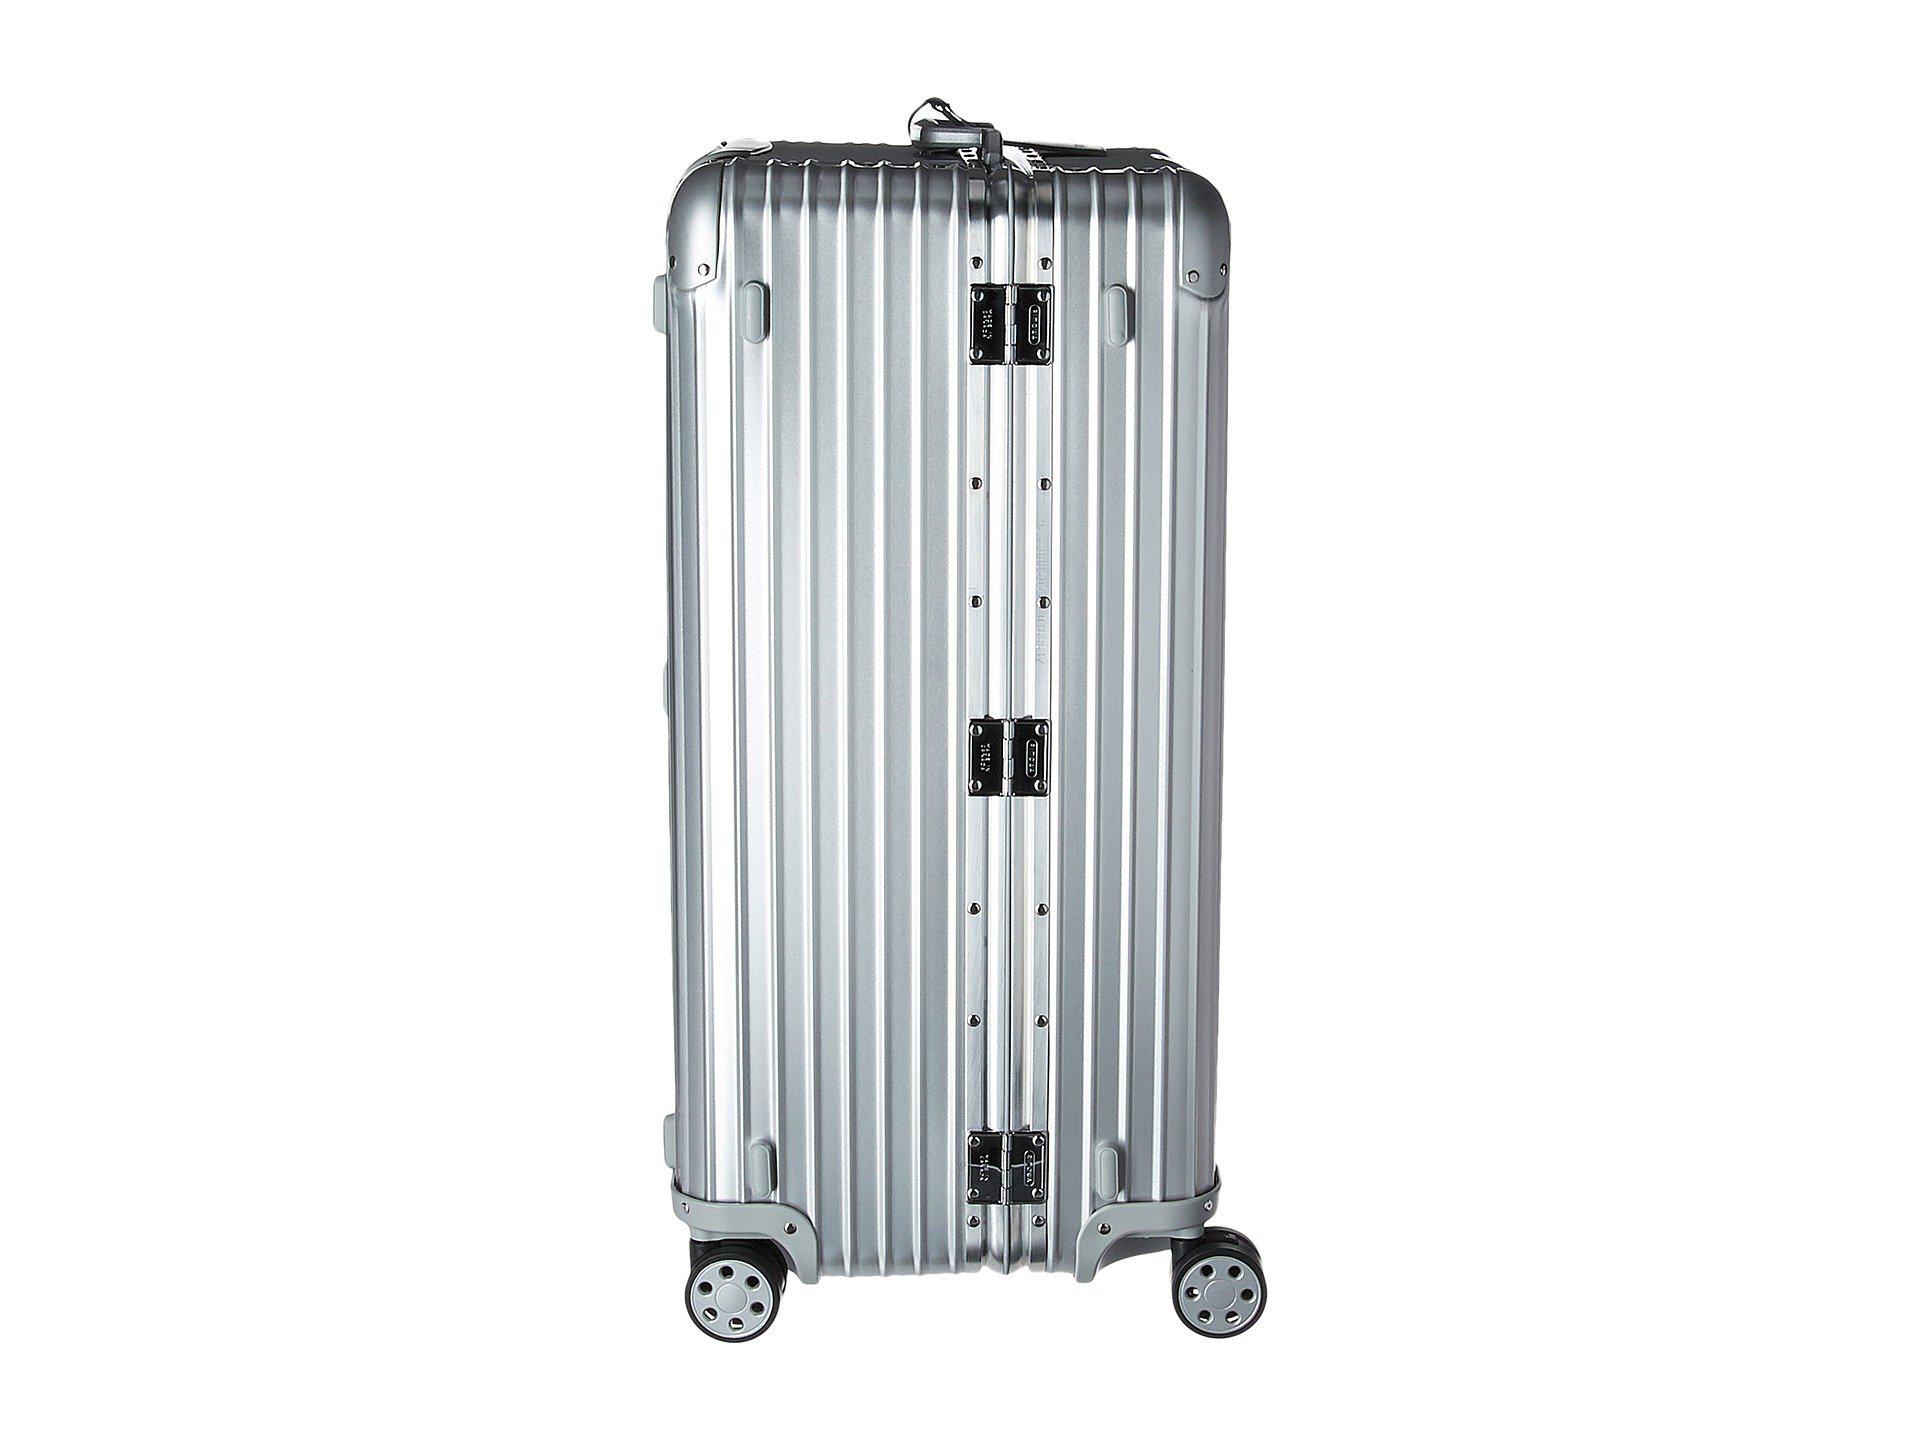 RIMOWA Topas Titanium Multiwheel Electronic Tag Luggage - 67l